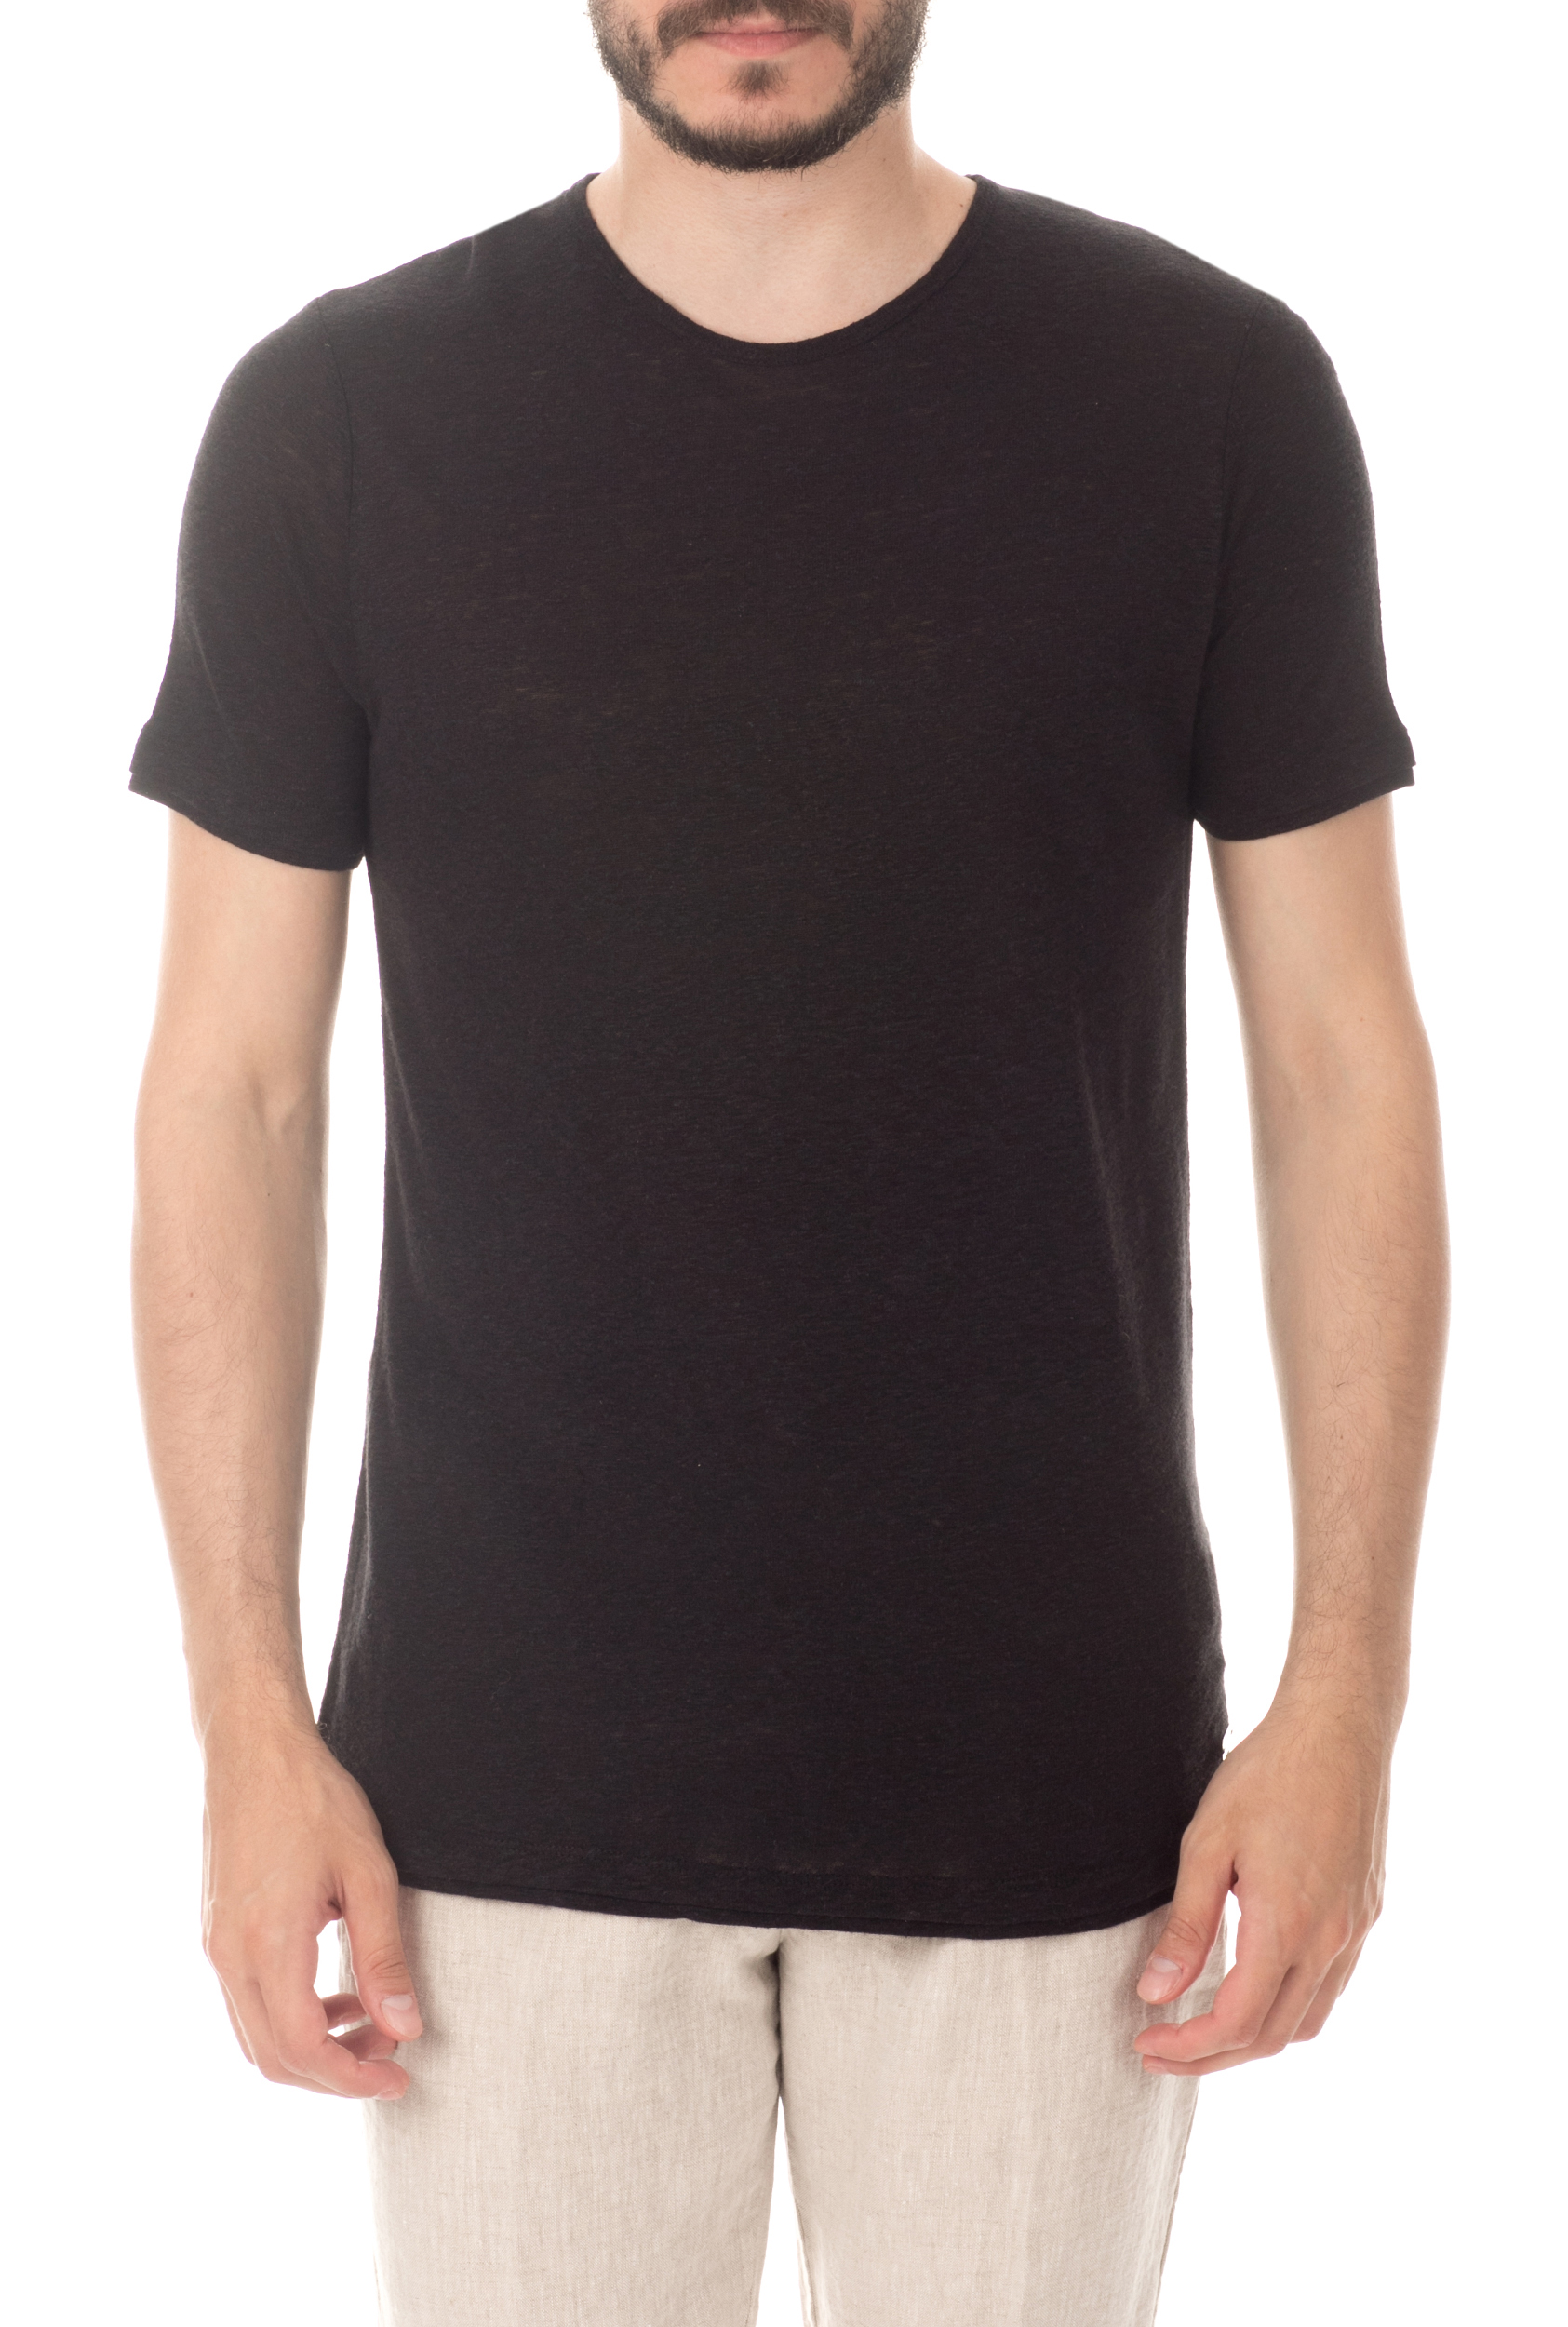 Ανδρικά/Ρούχα/Μπλούζες/Κοντομάνικες SSEINSE - Ανδρική κοντομάνικη μπλούζα SSEINSE μαύρη